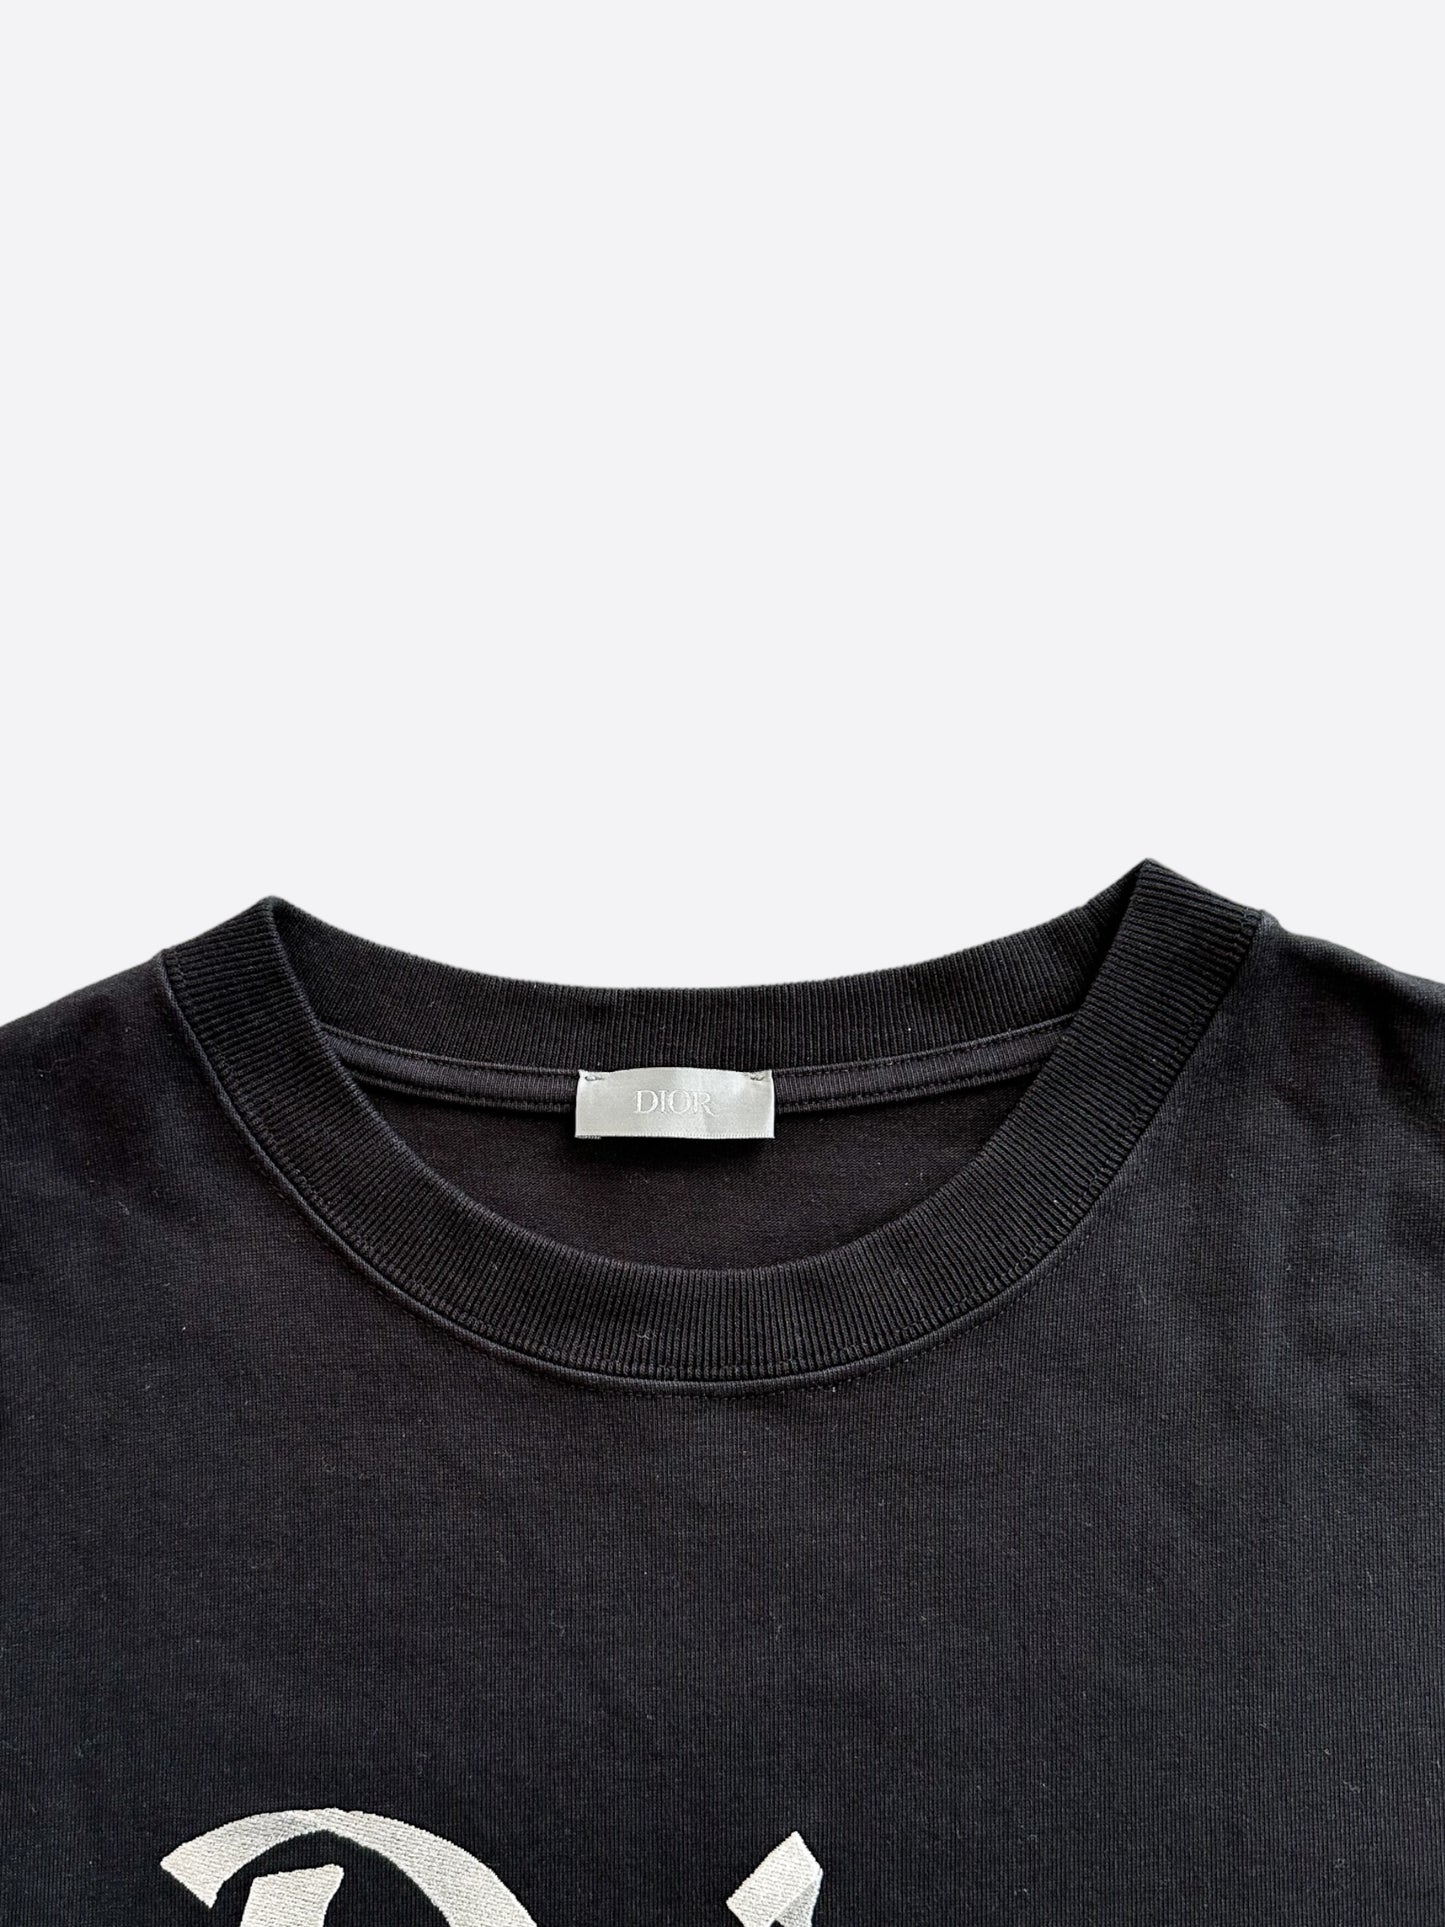 Dior Black & Silver 47 Logo T-Shirt